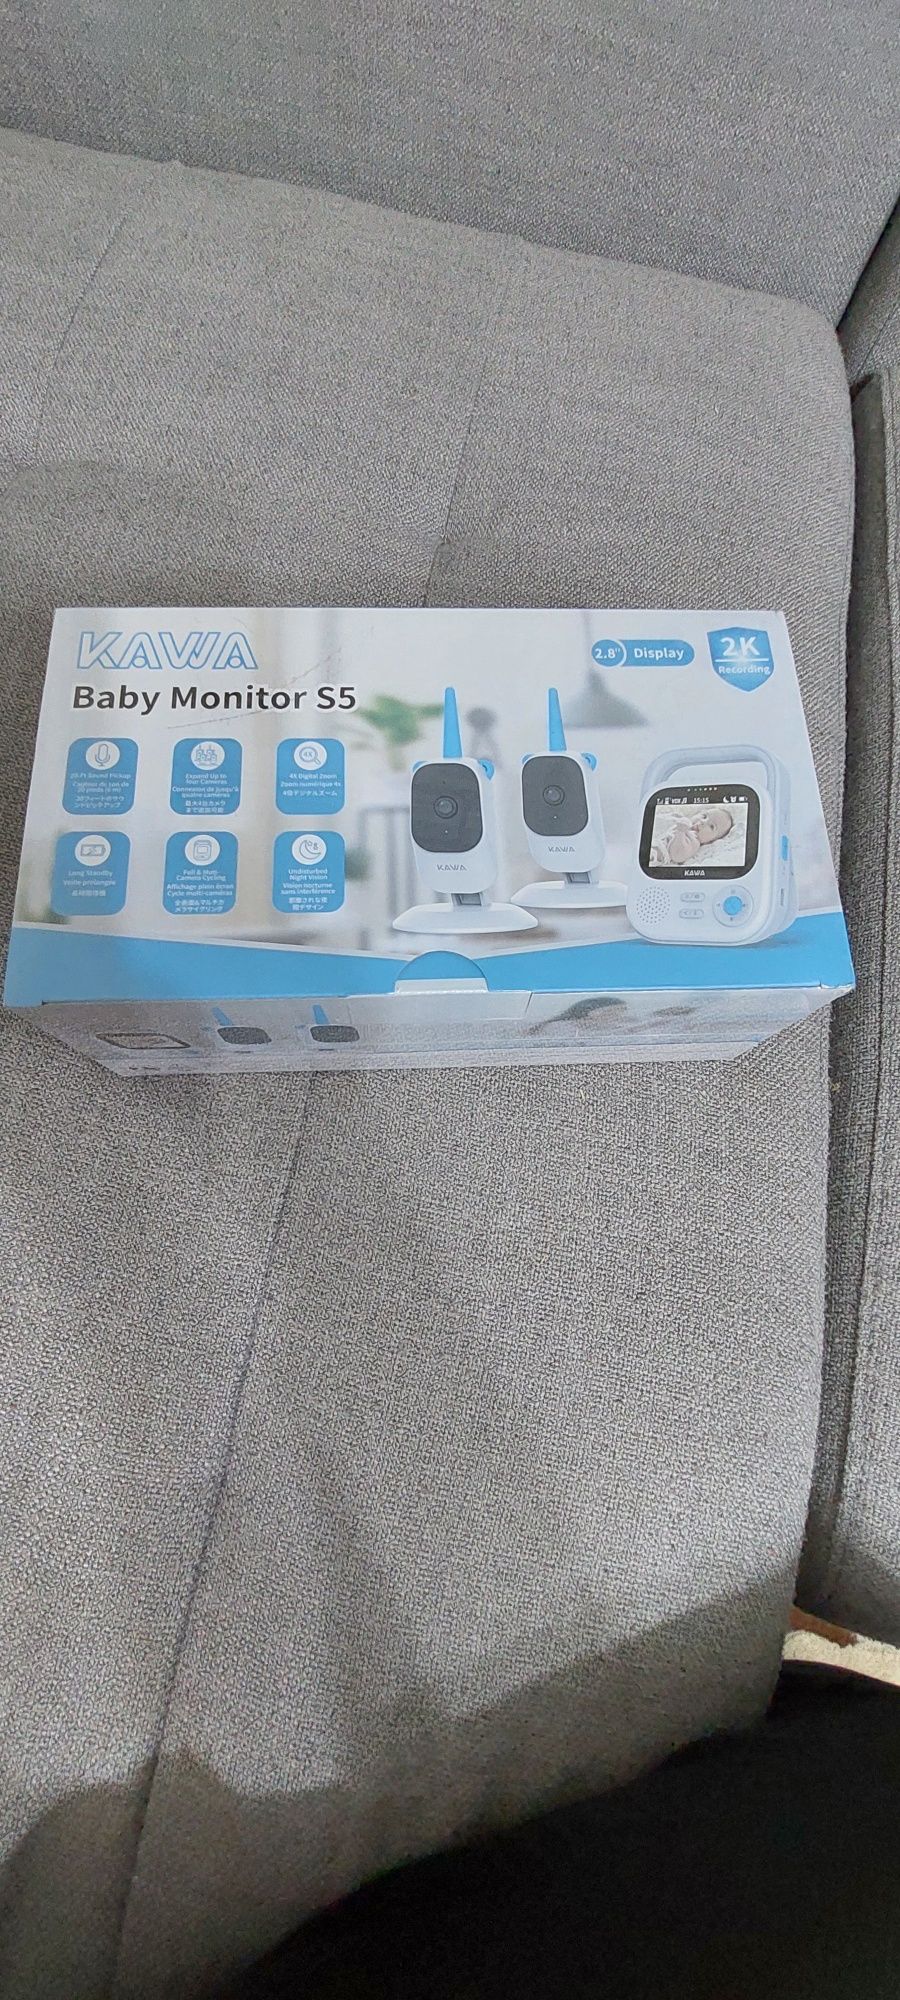 KAWA Baby Monitor with 2 Cameras
Video Baby Monitor with 2K QHD Camera